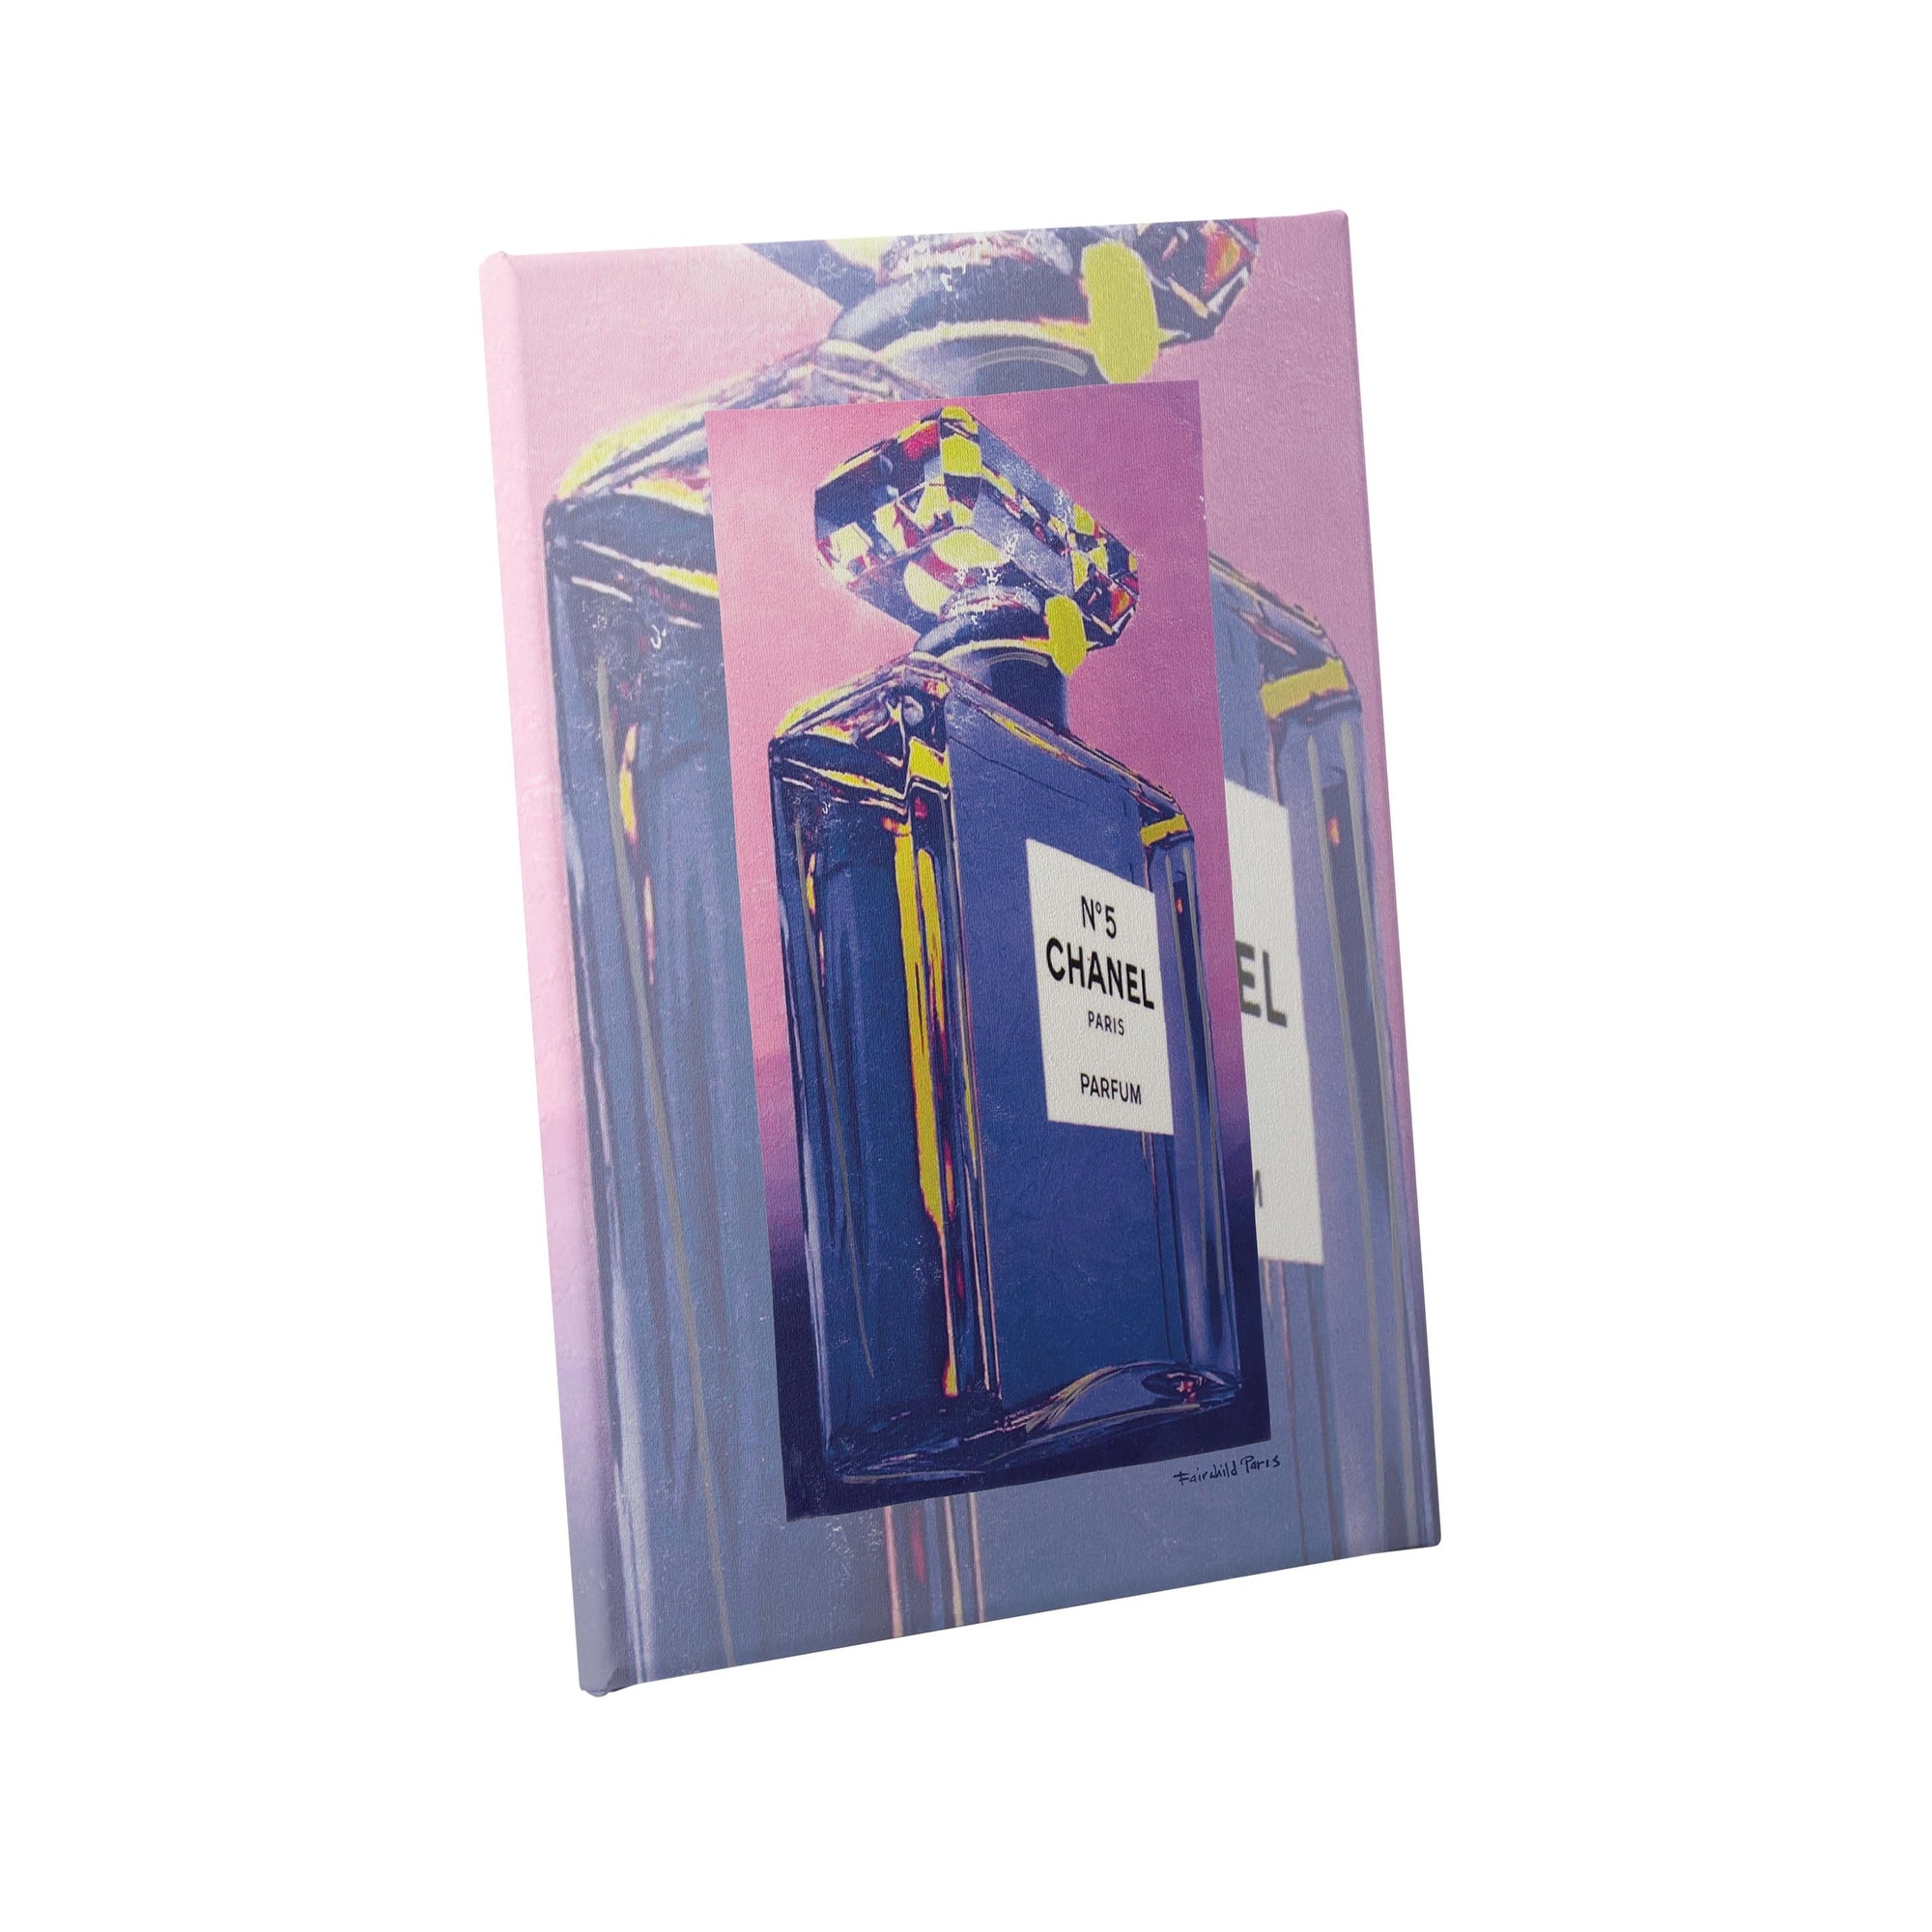 Fairchild Paris - Chanel Bottle Purple/ Pink - Canvas Wall Art 24 x 36 -  On Sale - Bed Bath & Beyond - 32627846